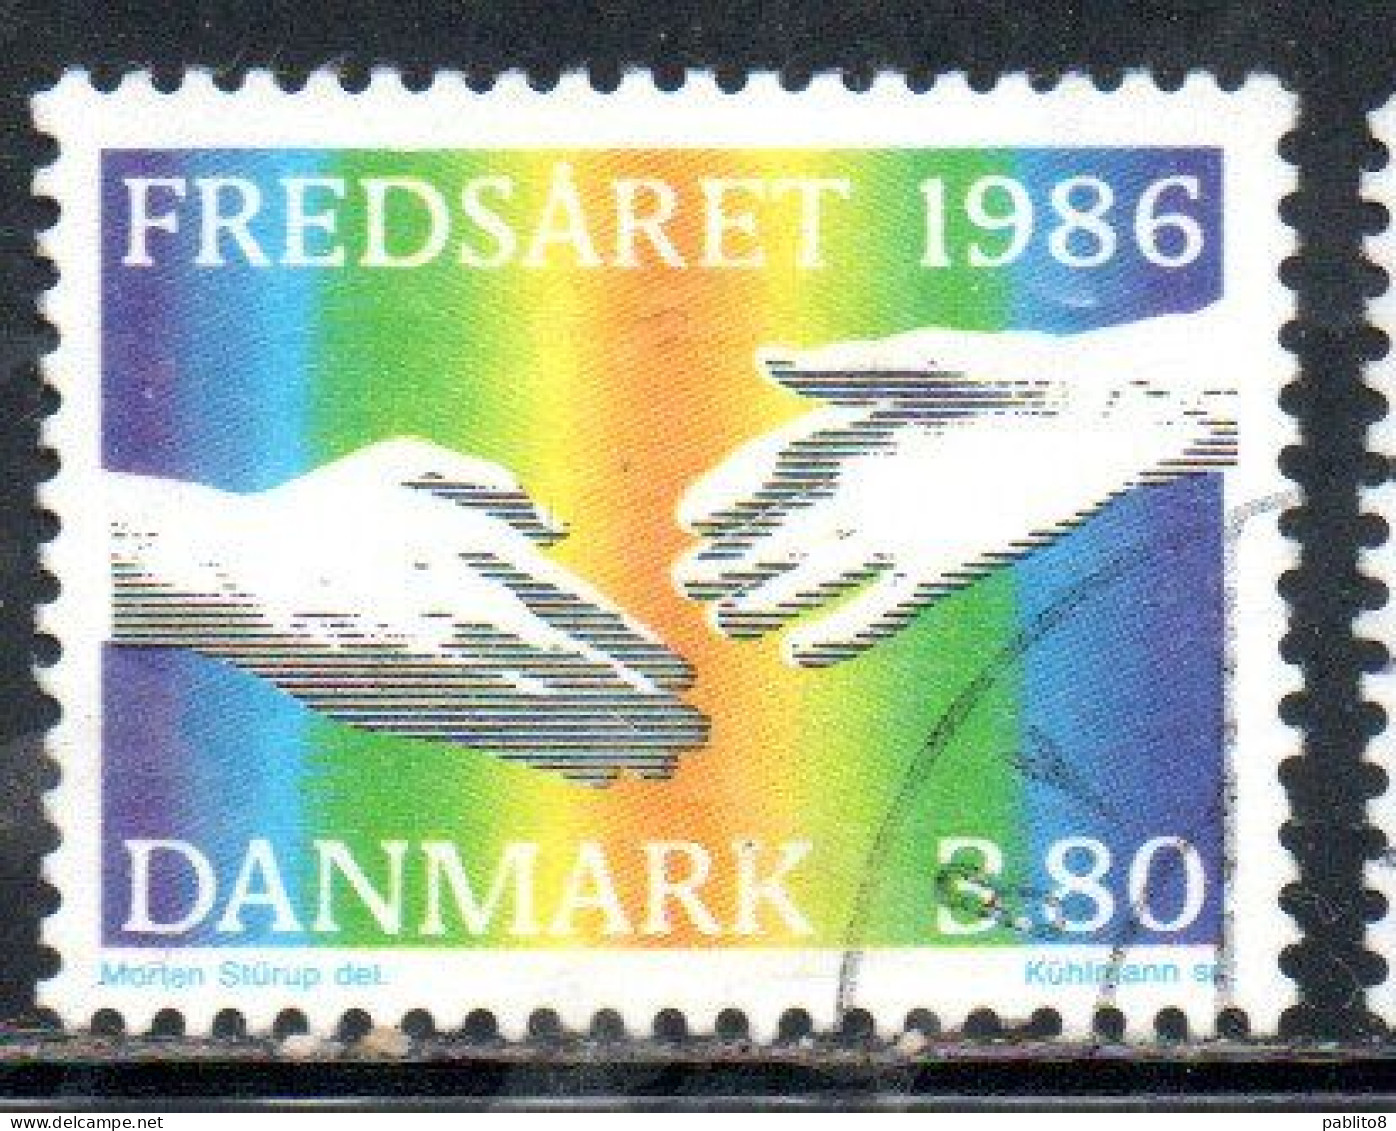 DANEMARK DANMARK DENMARK DANIMARCA 1986 INTERNATIONAL PEACE YEAR 3.80k USED USATO OBLITERE' - Usado